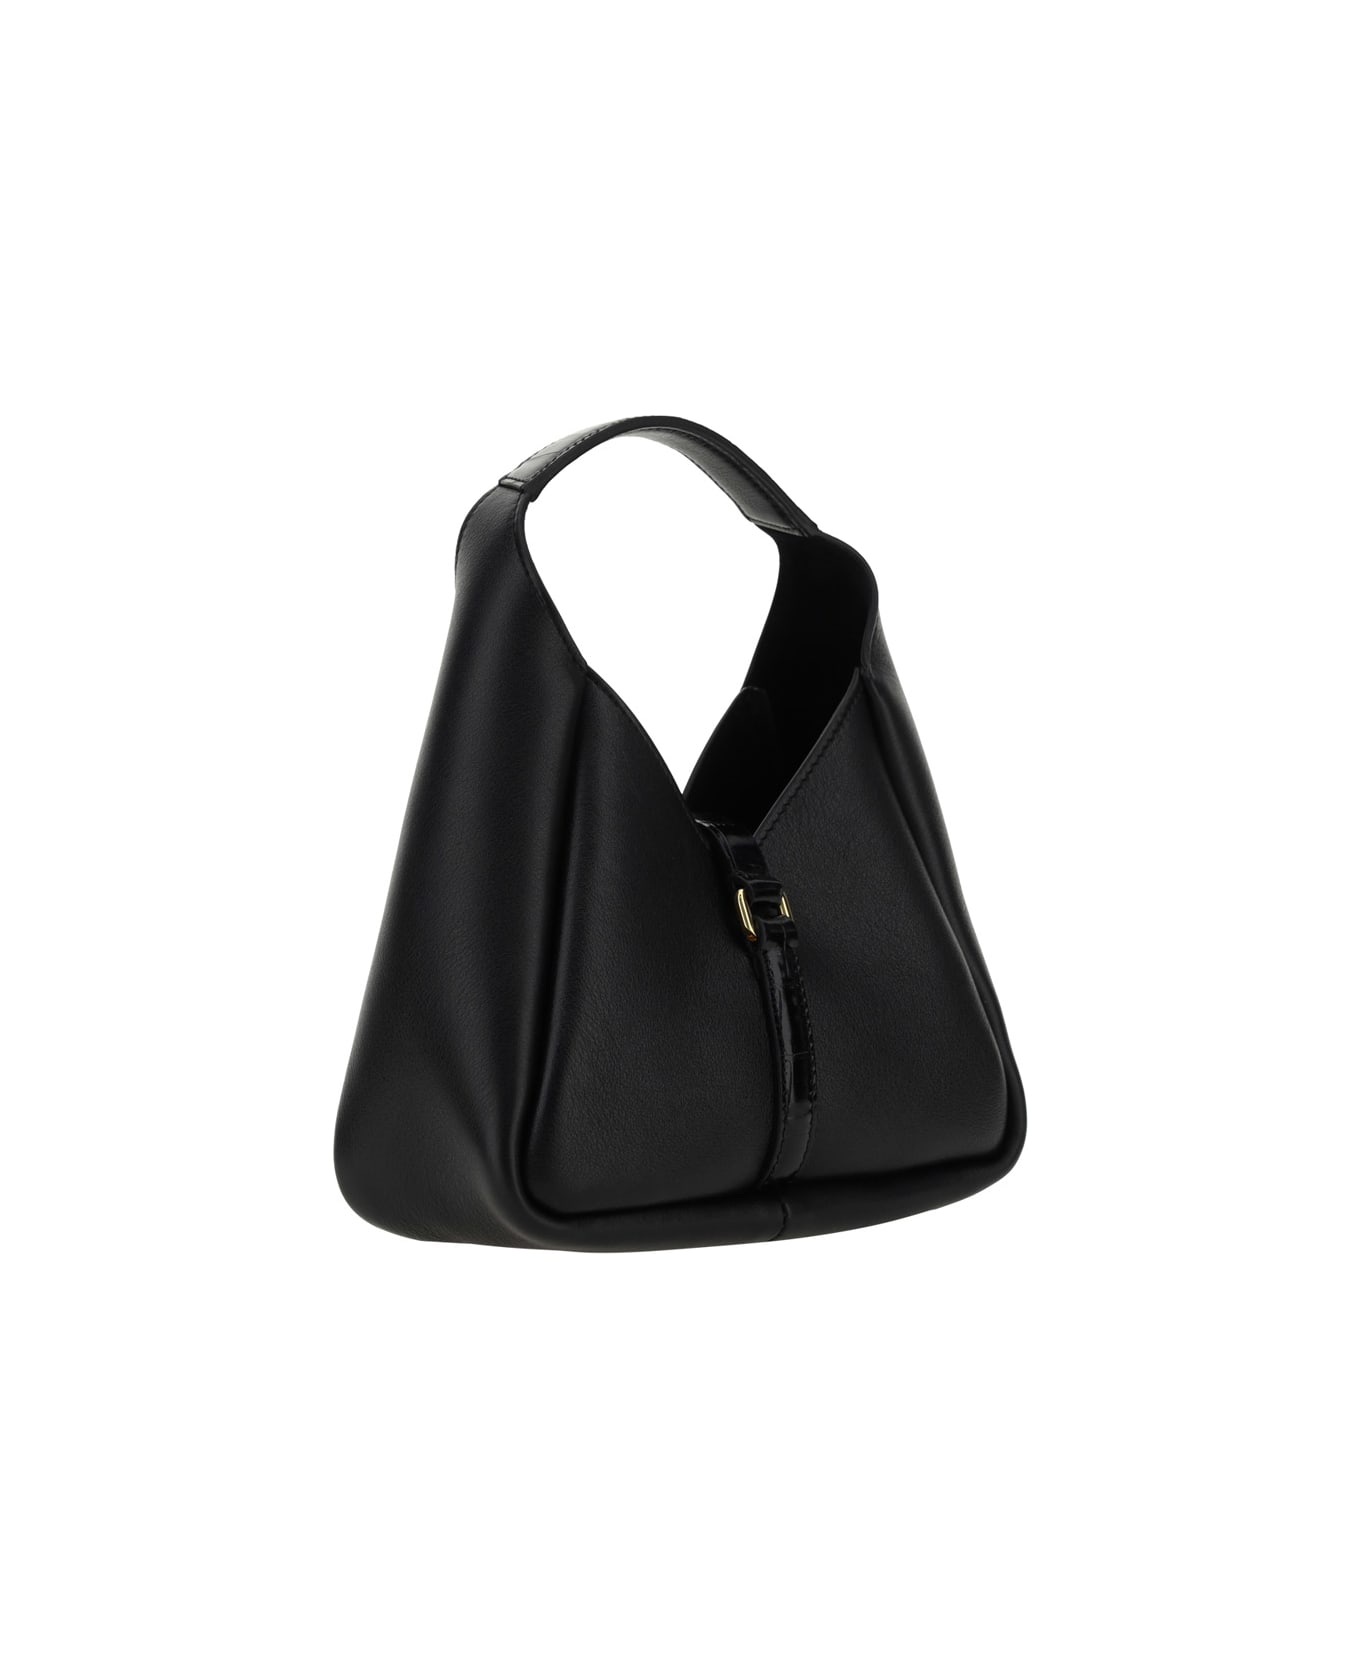 Givenchy G-hobo Leather Mini Handbag - Black